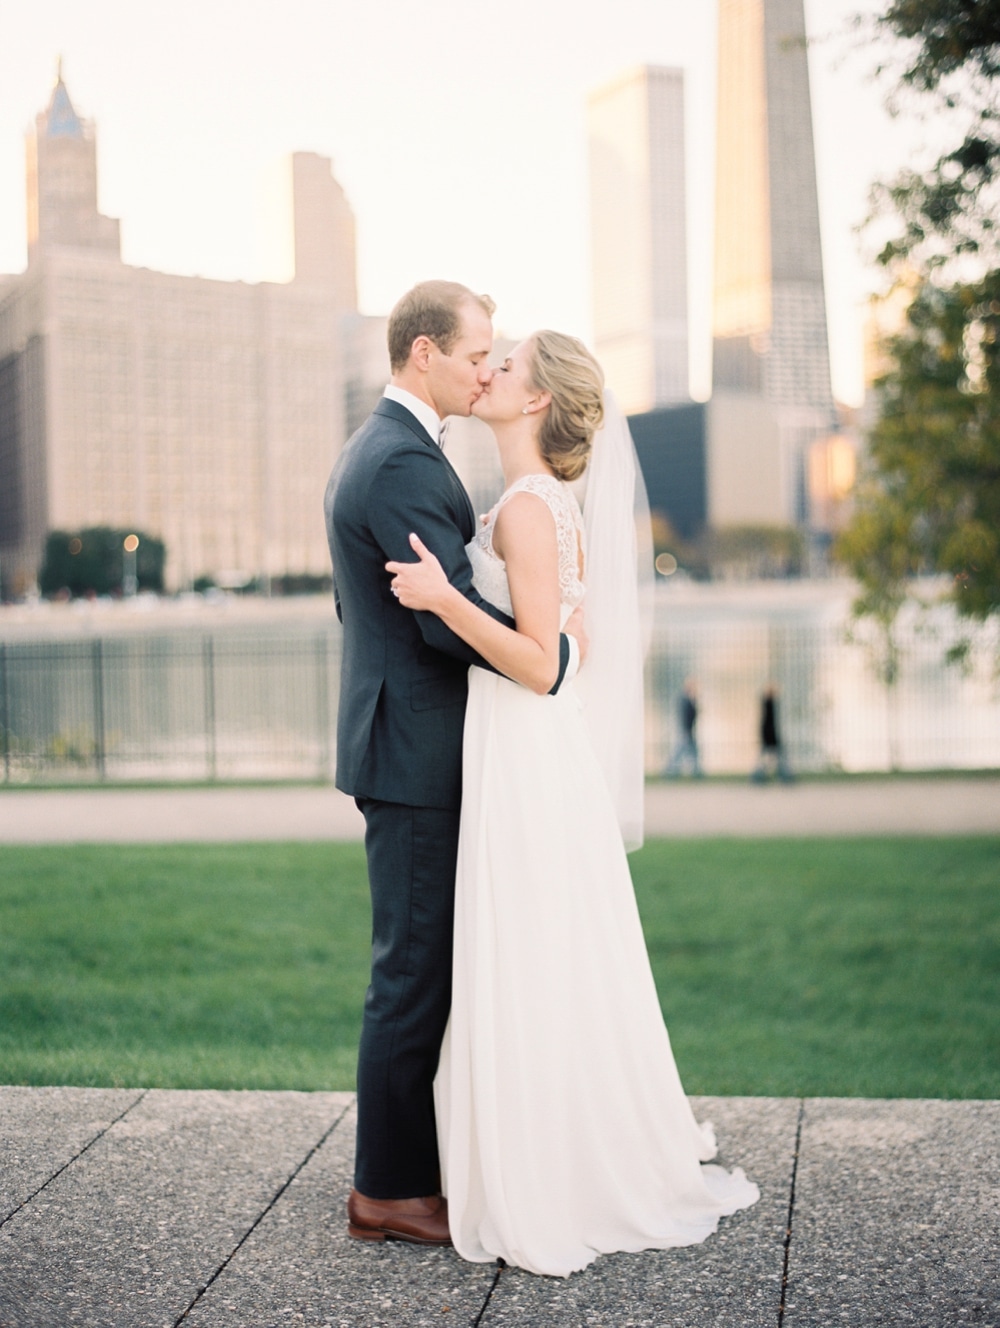 kristin-la-voie-photography-bridgeport-art-center-wedding-chicago-wedding-photographer-129